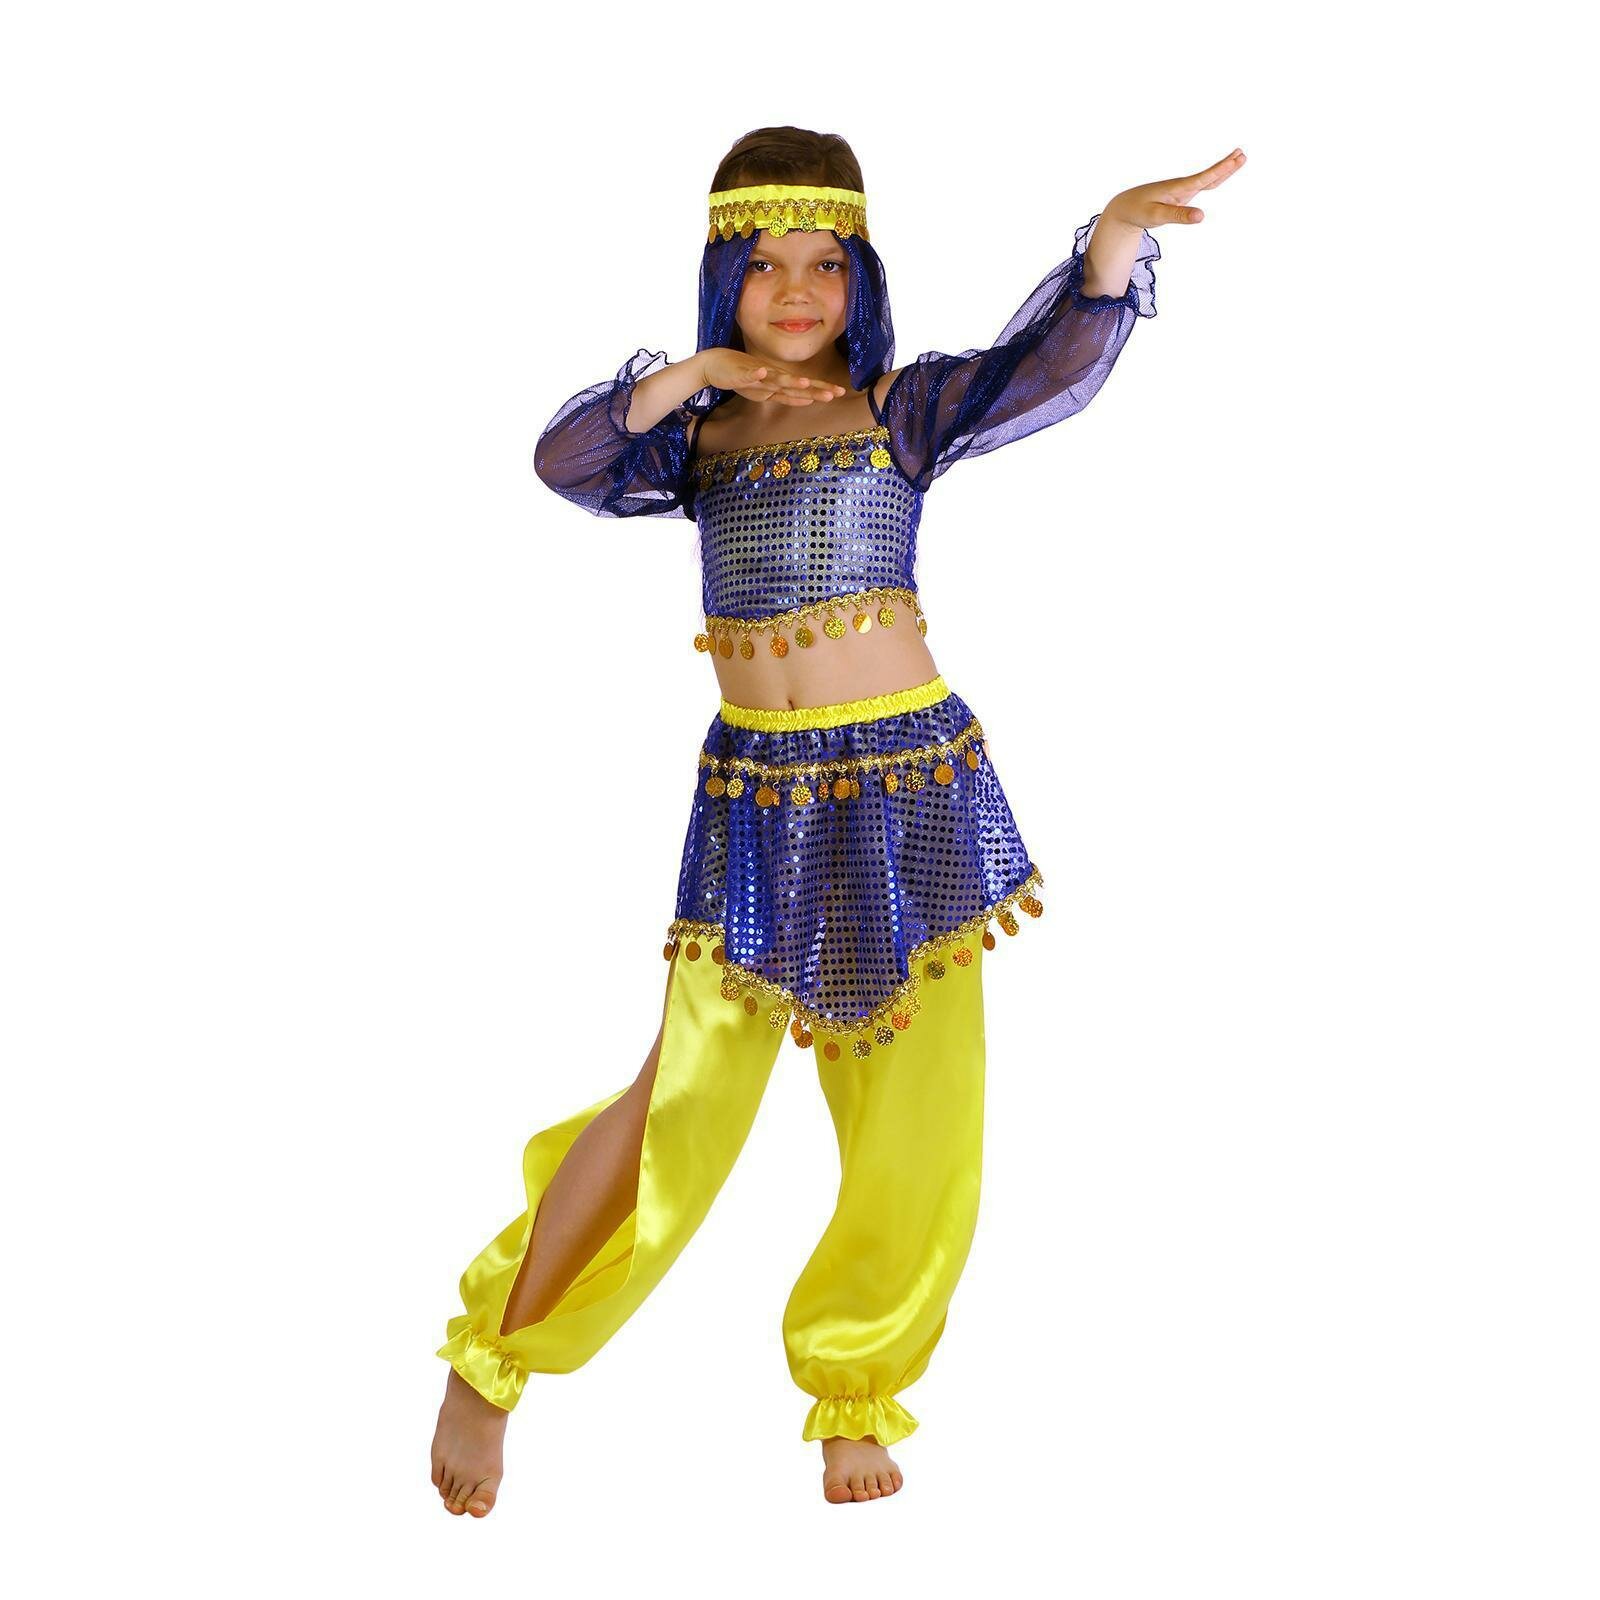 Карнавальный костюм "Шахерезада", повязка, топ с рукавами, штаны, цвет сине-жёлтый, р. 34, рост 134 см